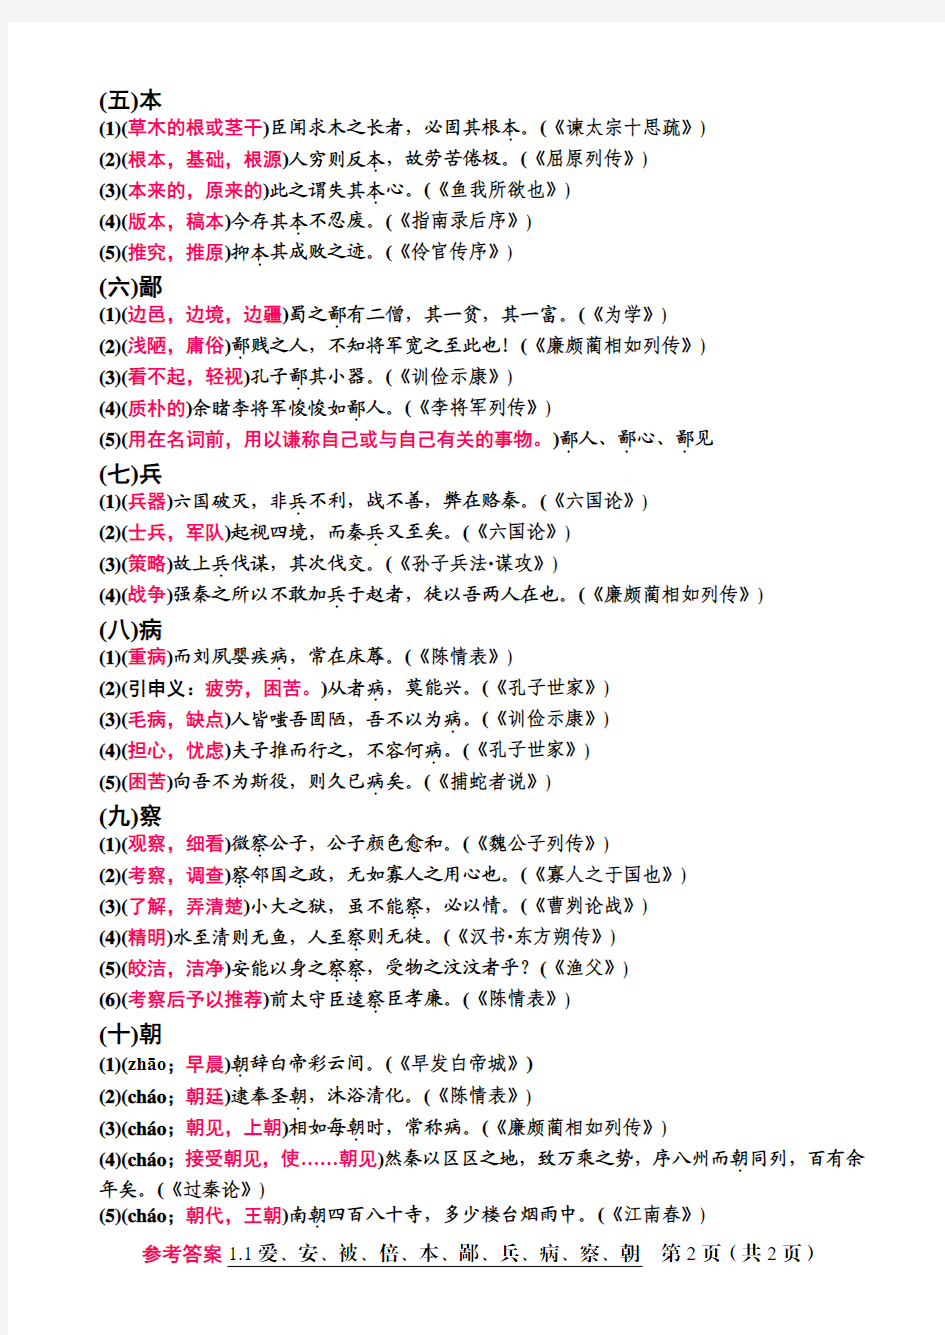 纪中语文120个文言实词释义参考答案(1.1爱、安、被、倍、本、鄙、兵、病、察、朝)